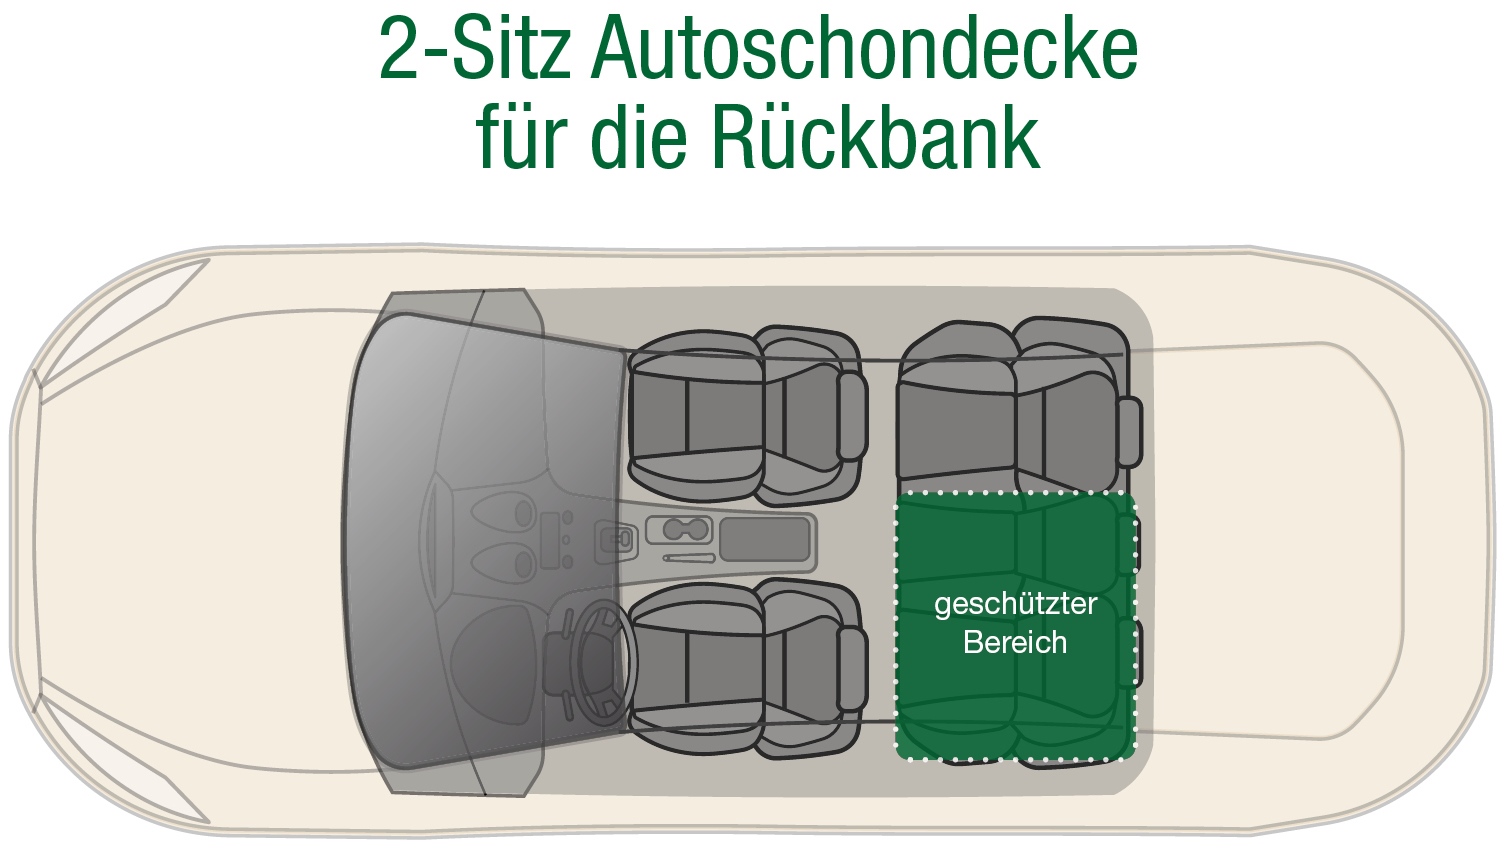 Dr. Bark 2-Sitz Autoschondecke Rückbank - schwarz